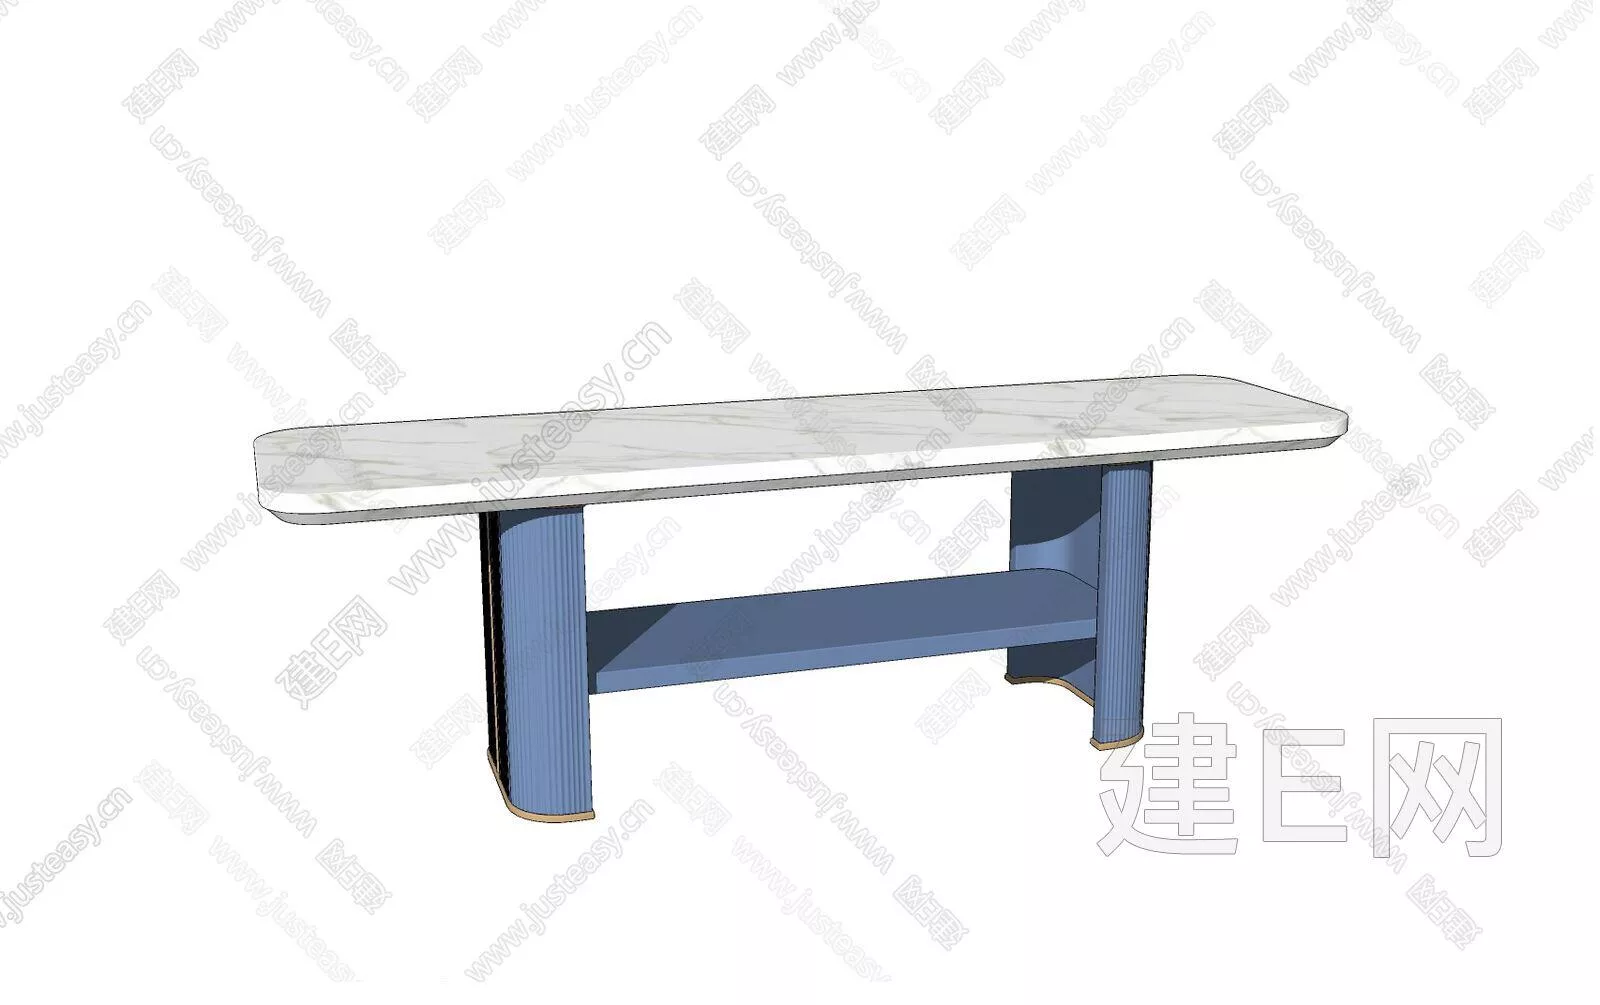 MODERN SIDE TABLE - SKETCHUP 3D MODEL - ENSCAPE - 111035880